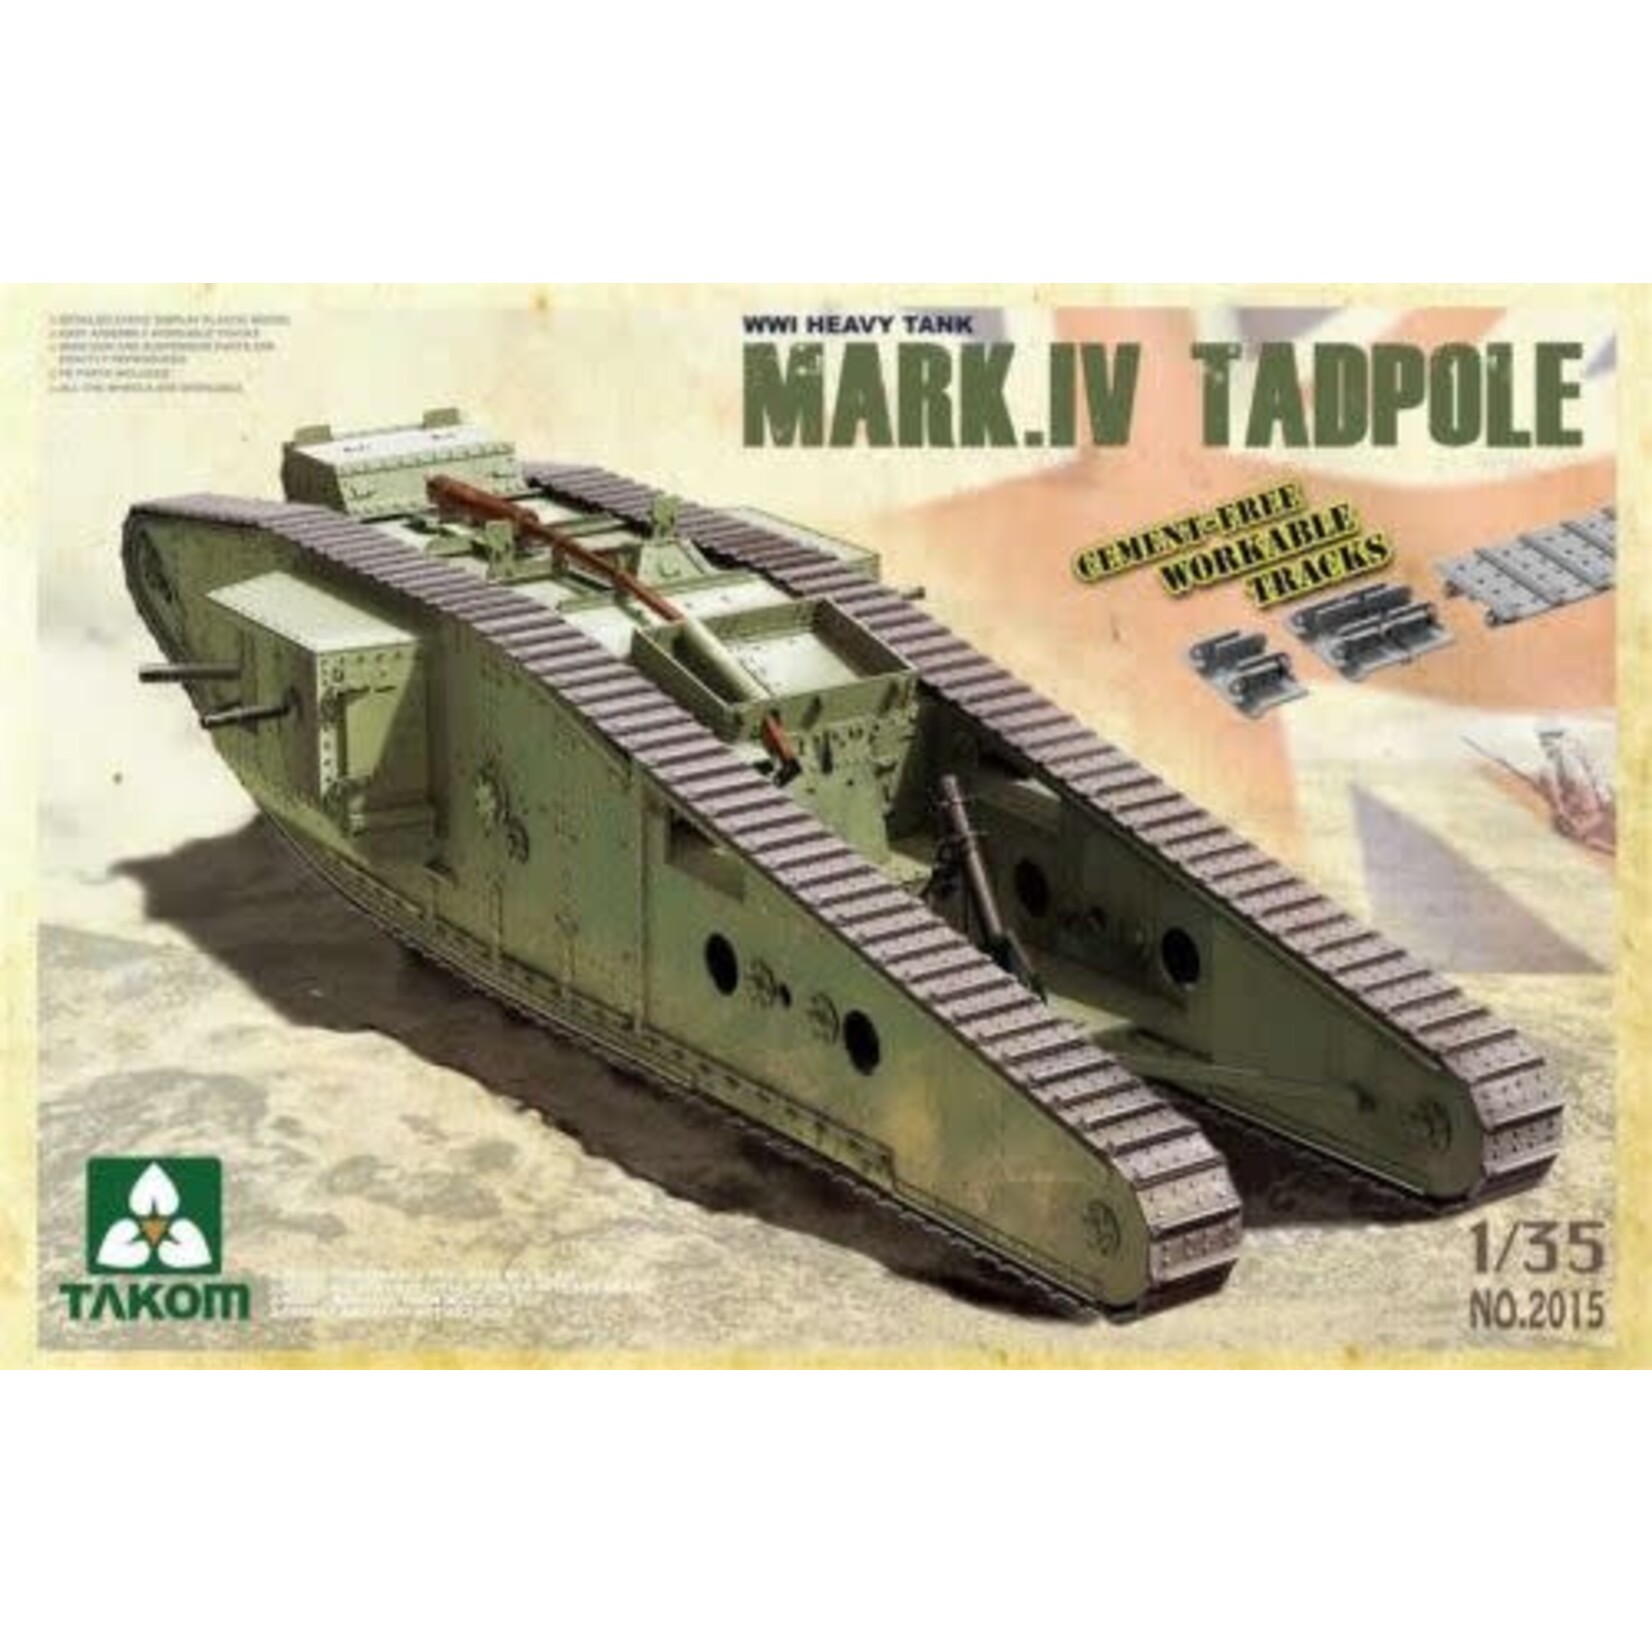 Takom TAK2015 WWI Heavy Battle Tank Mark IV Male Tadpole (1/35)